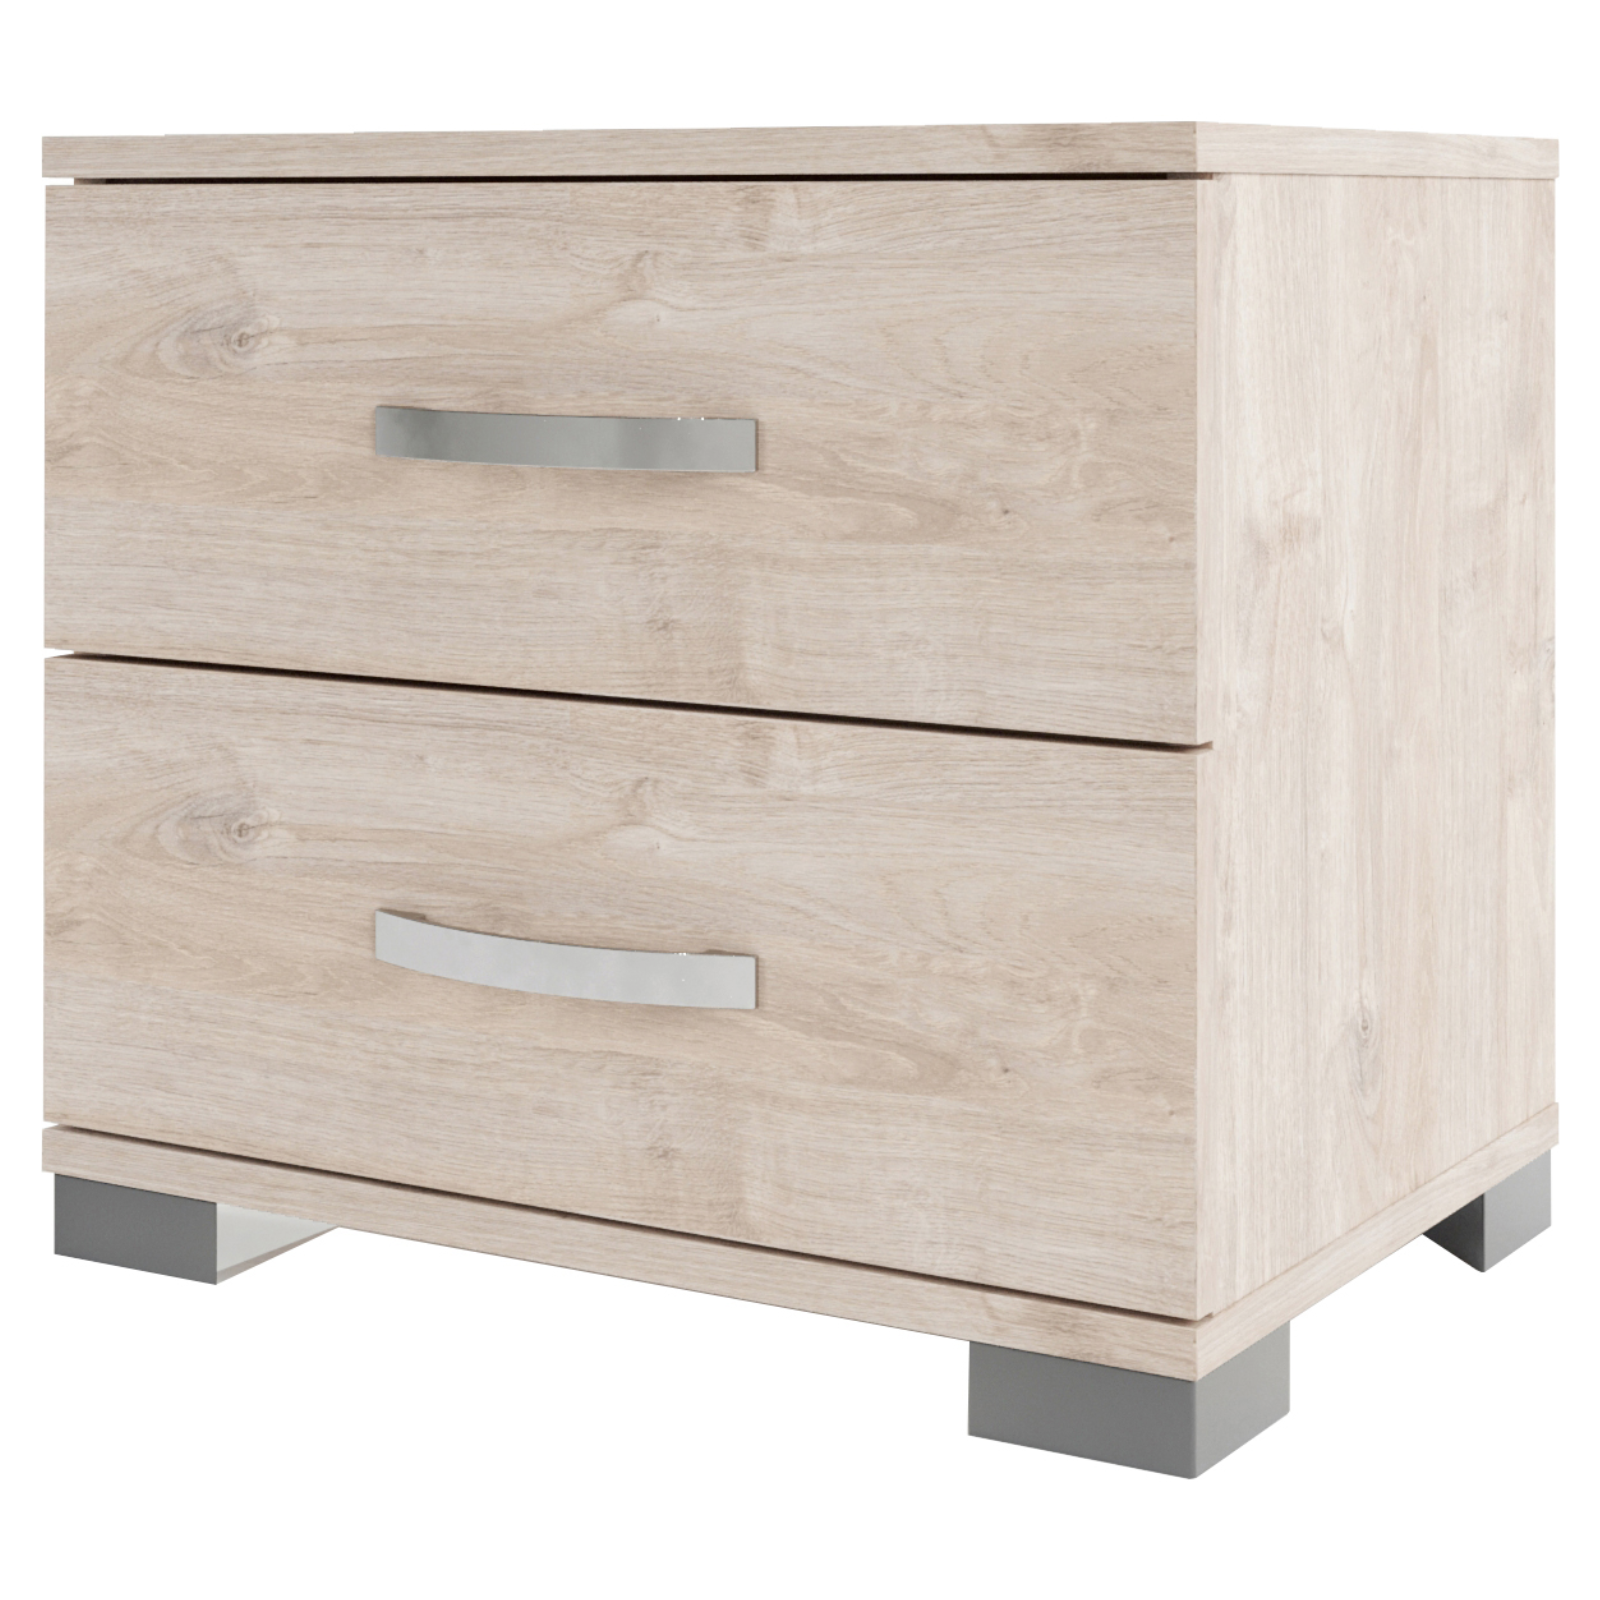 Comodino in legno "Comma" con 2 cassetti design moderno per cameretta o camera da letto